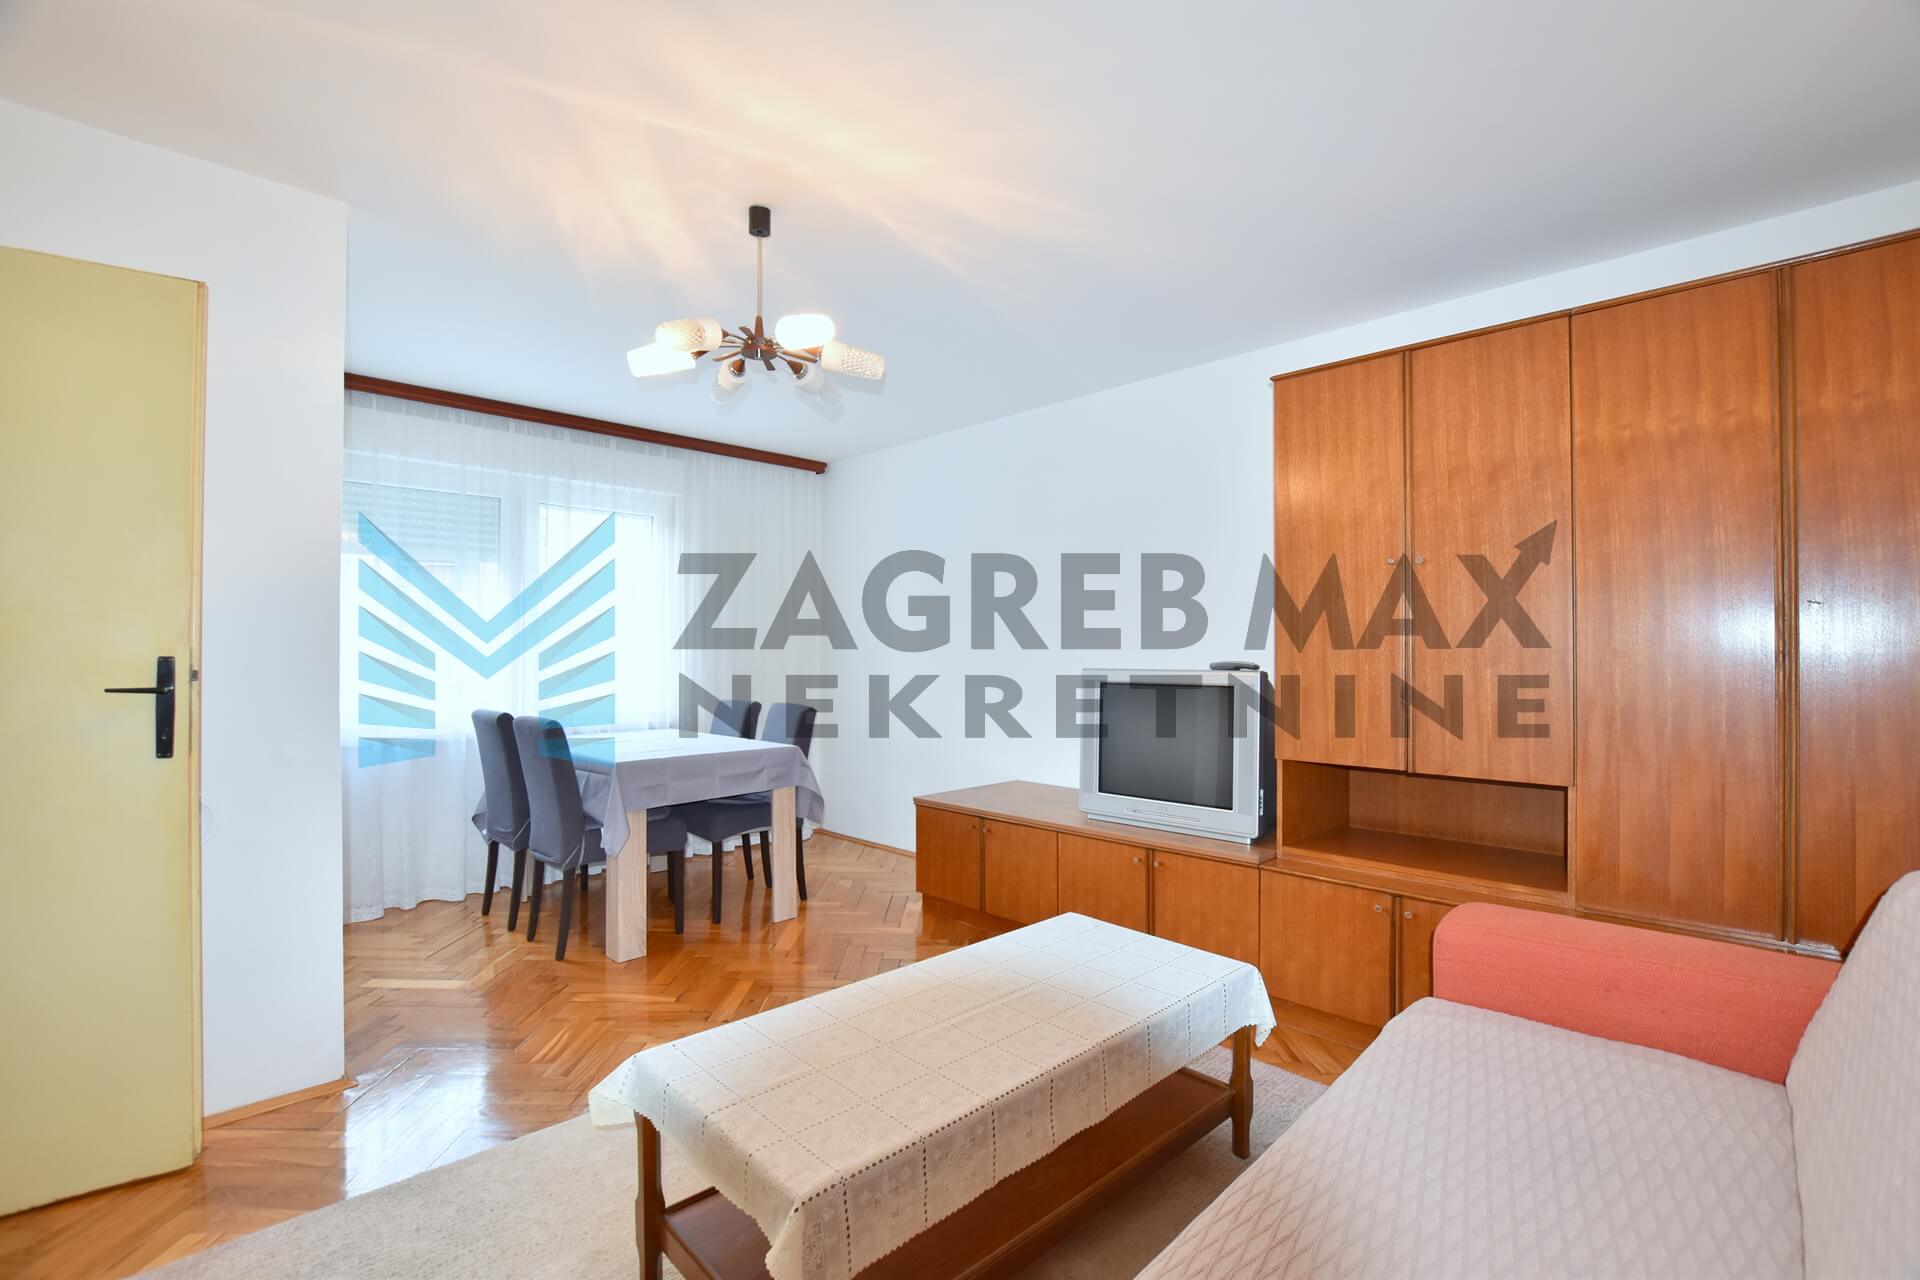 Zagreb - PREČKO - Lhotkina ulica 17, 2-soban stan 49,43 m2, komforan, odmah useljiv